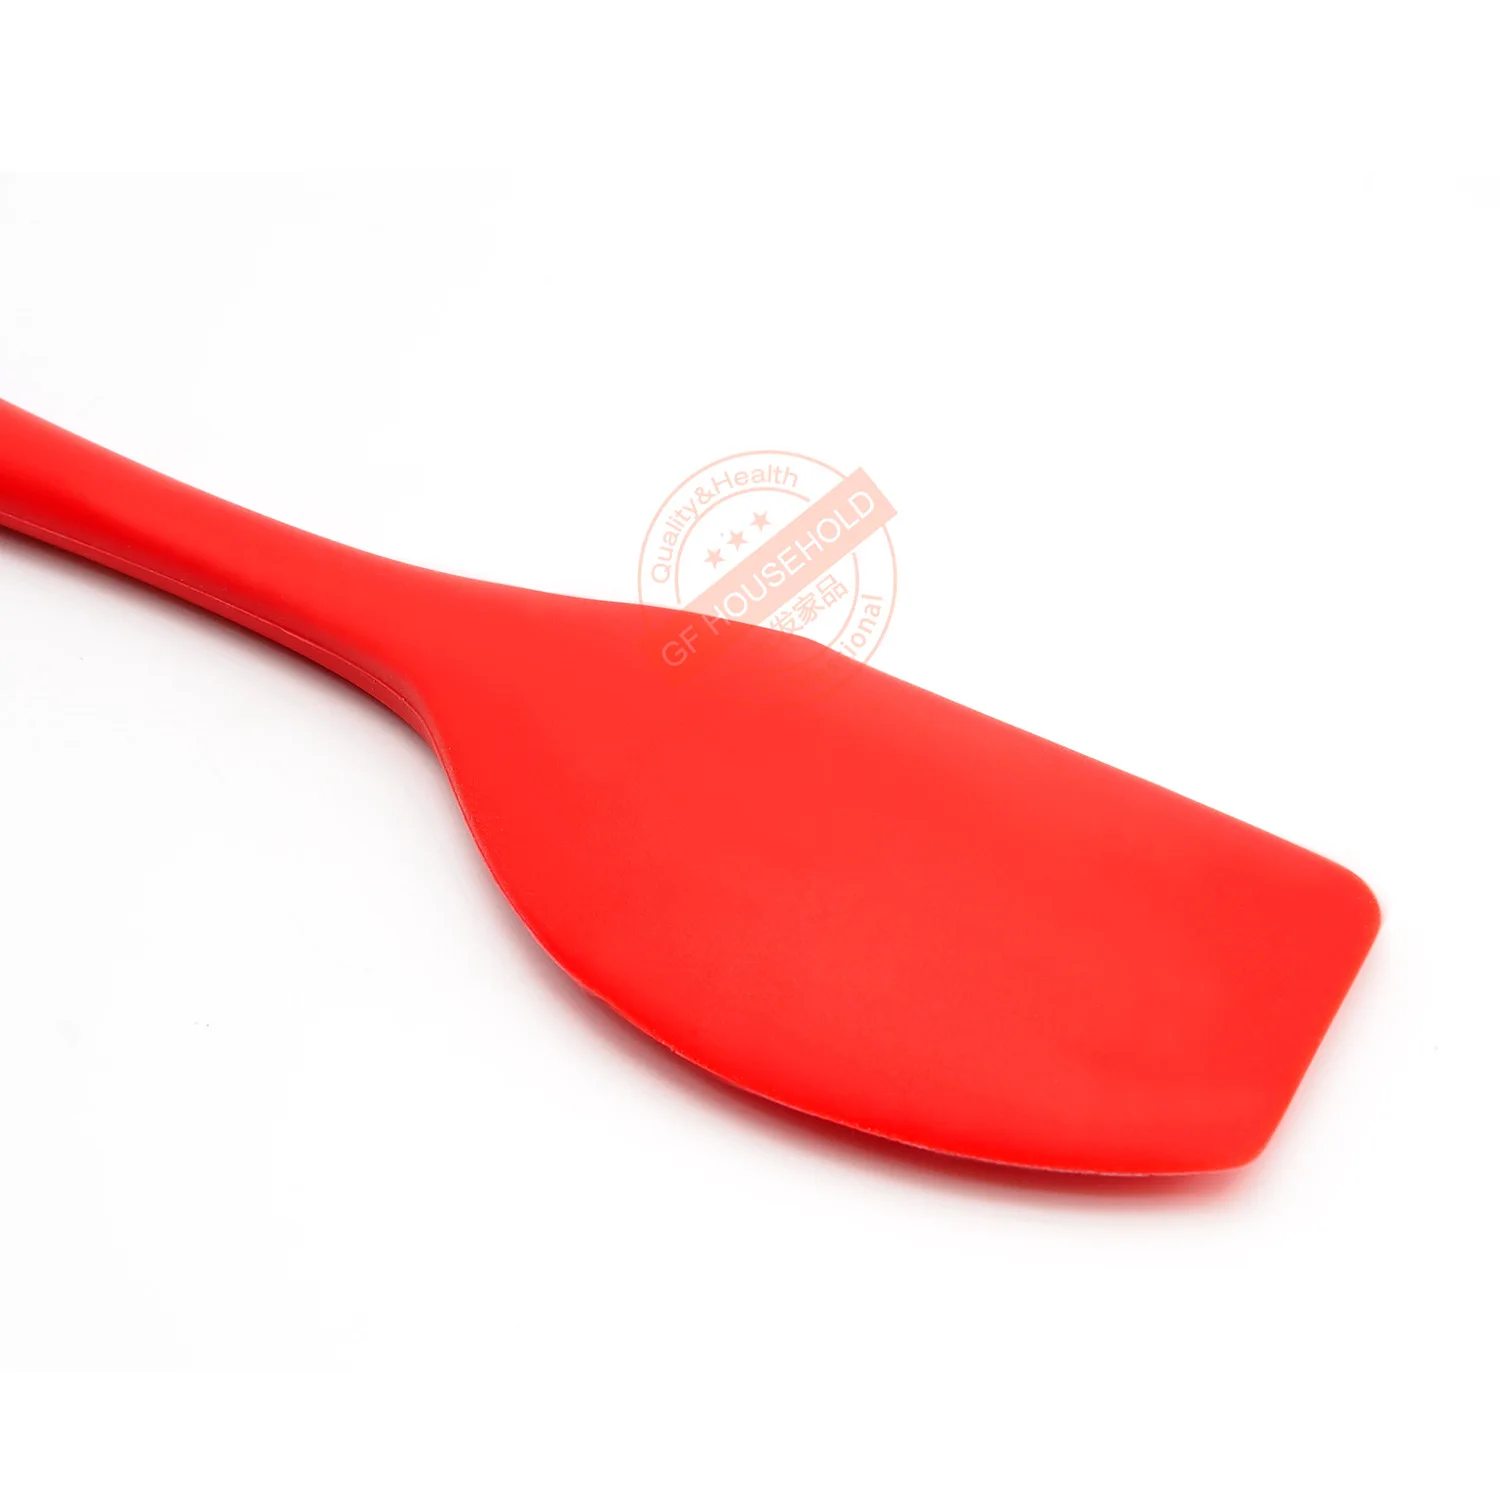 Силиконовая лопаточка, 1" большая силиконовая лопаточка-600 °F термостойкая бесшовная резиновая лопатка-идеально подходит для выпечки, приготовления пищи, лома